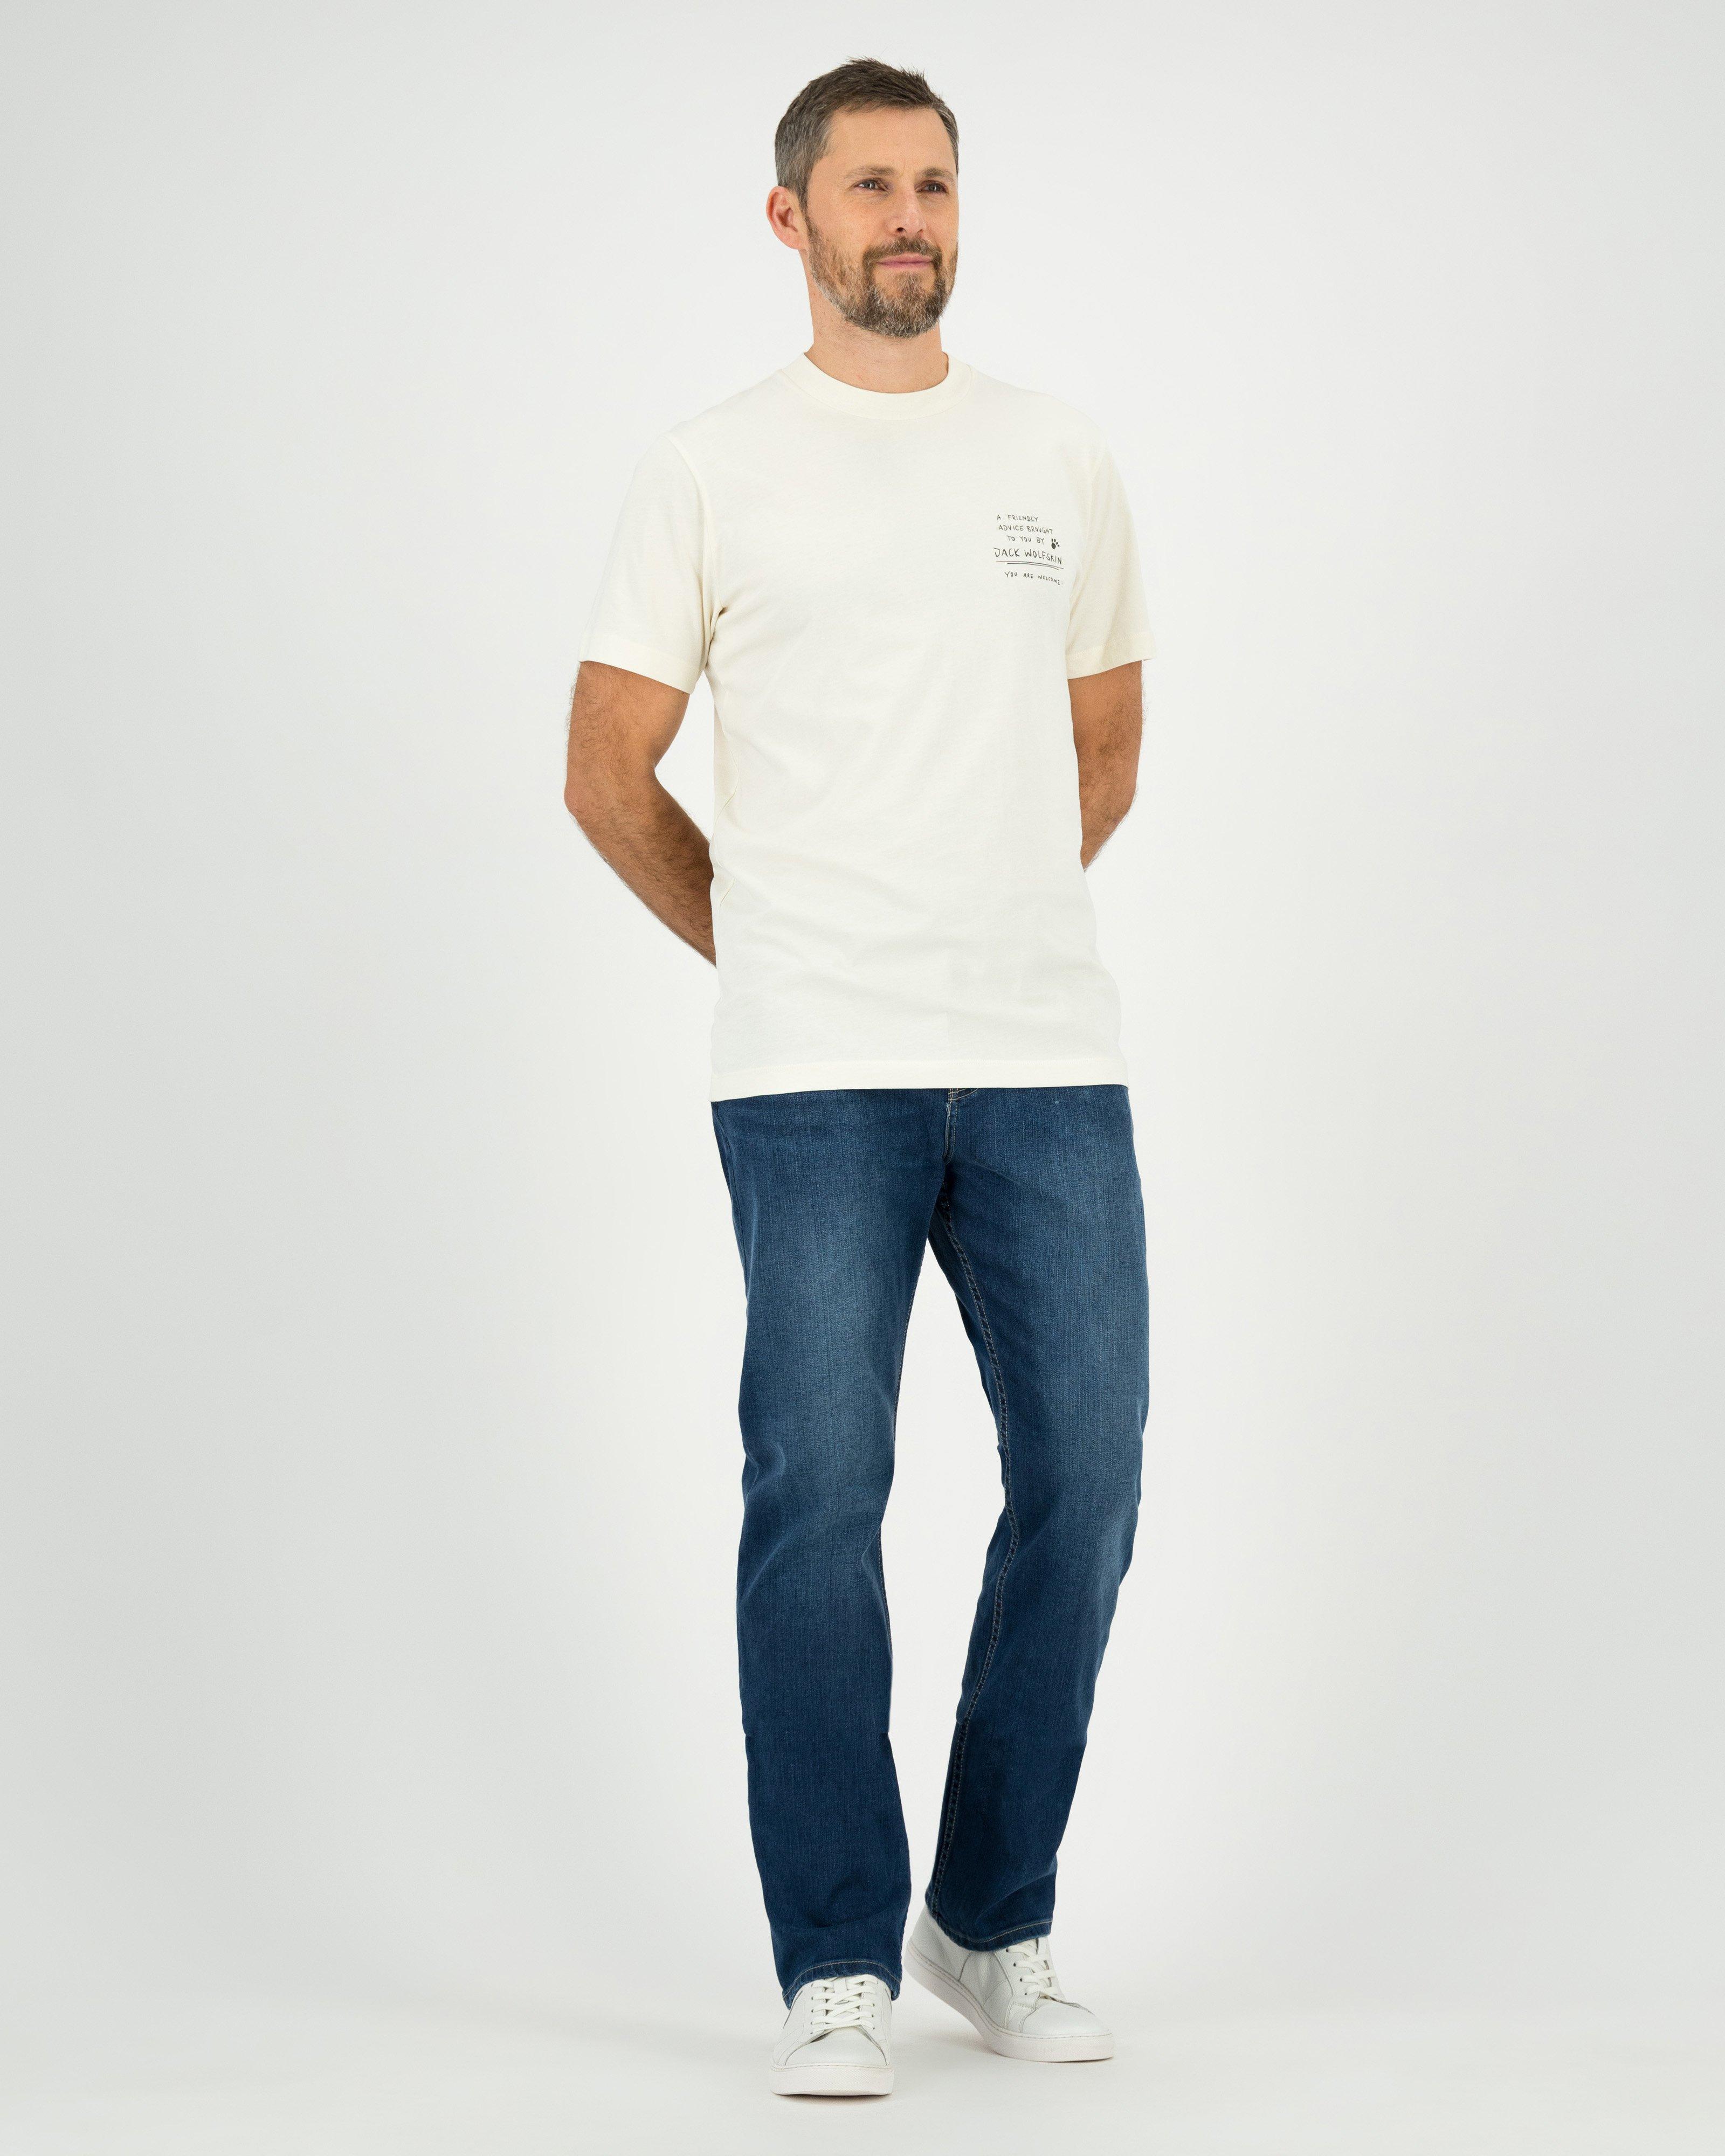 Jack Wolfskin Men’s Journey Cotton T-shirt -  White